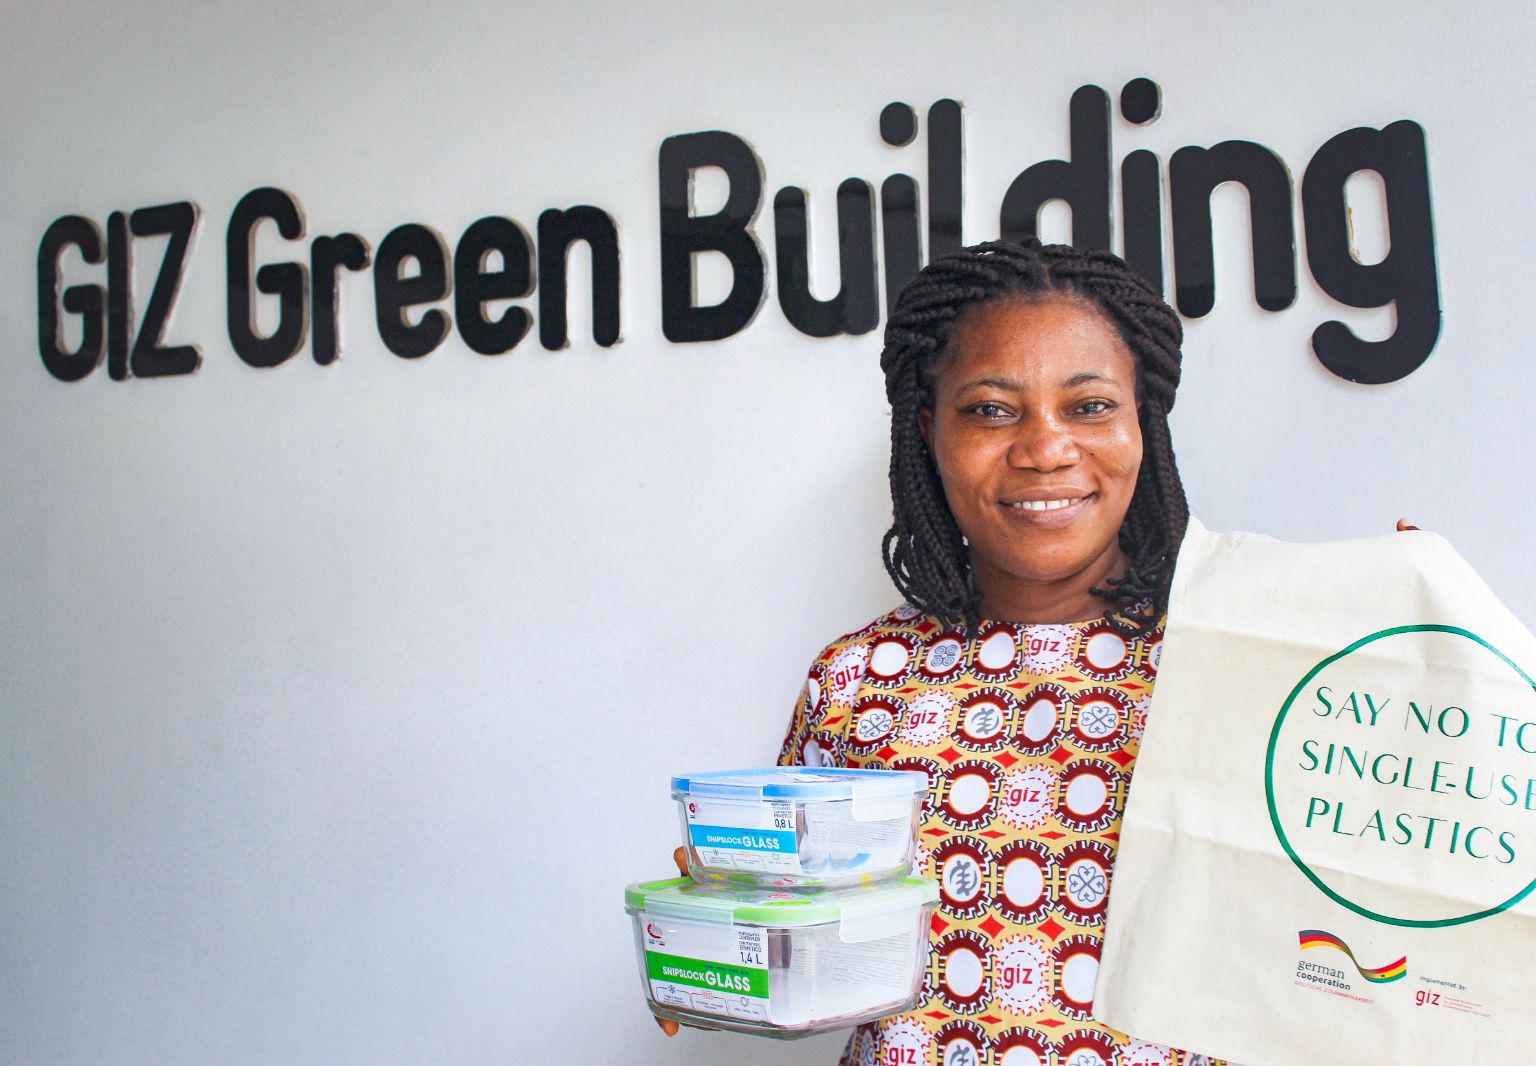 Foto: Eine Frau steht vor einer Wand mit der Aufschrift: „GIZ Green Building“. In den Händen hält sie zwei Glasboxen mit Deckel und eine Stofftasche mit der Aufschrift: „Say no to single-use plastics“.